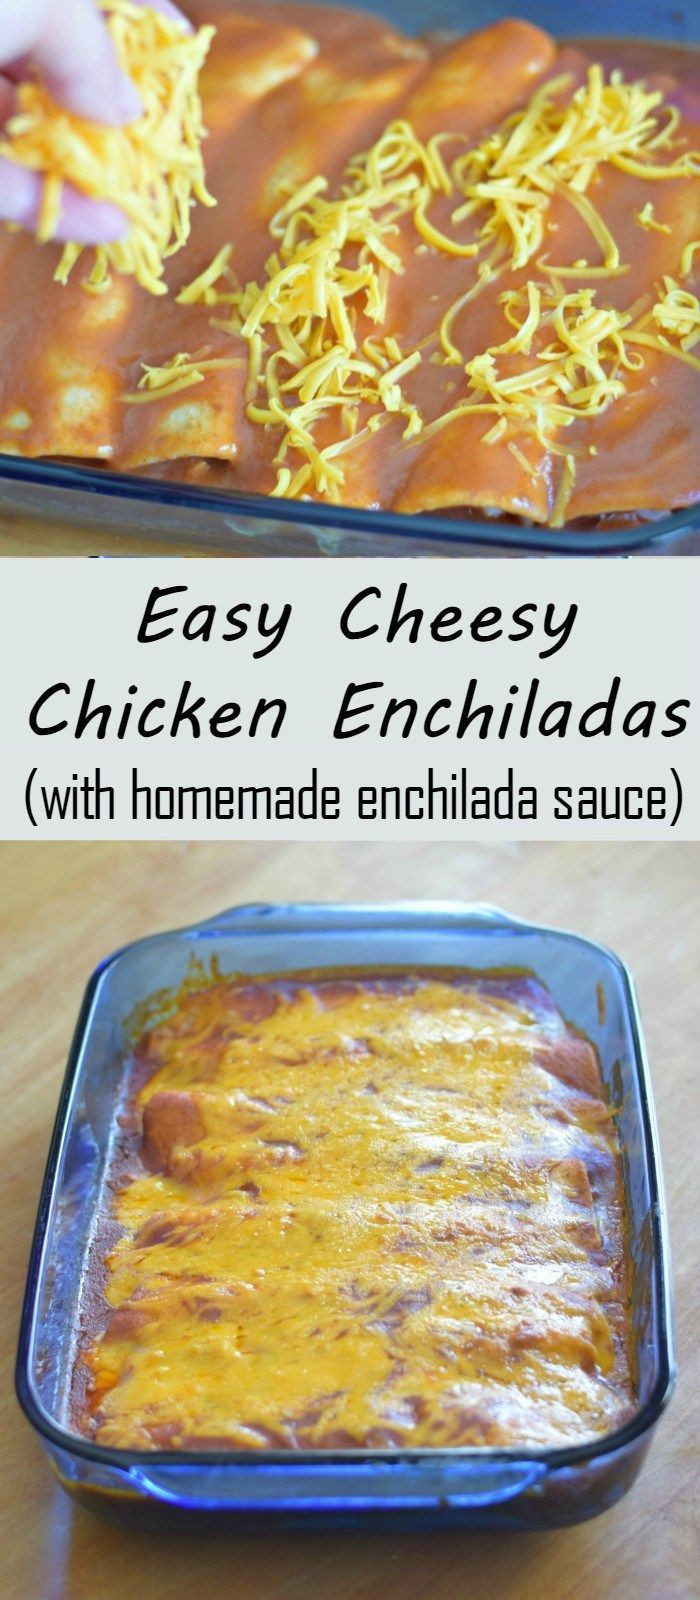 Kid Friendly Chicken Enchiladas
 Easy cheesy chicken enchiladas recipe with homemade